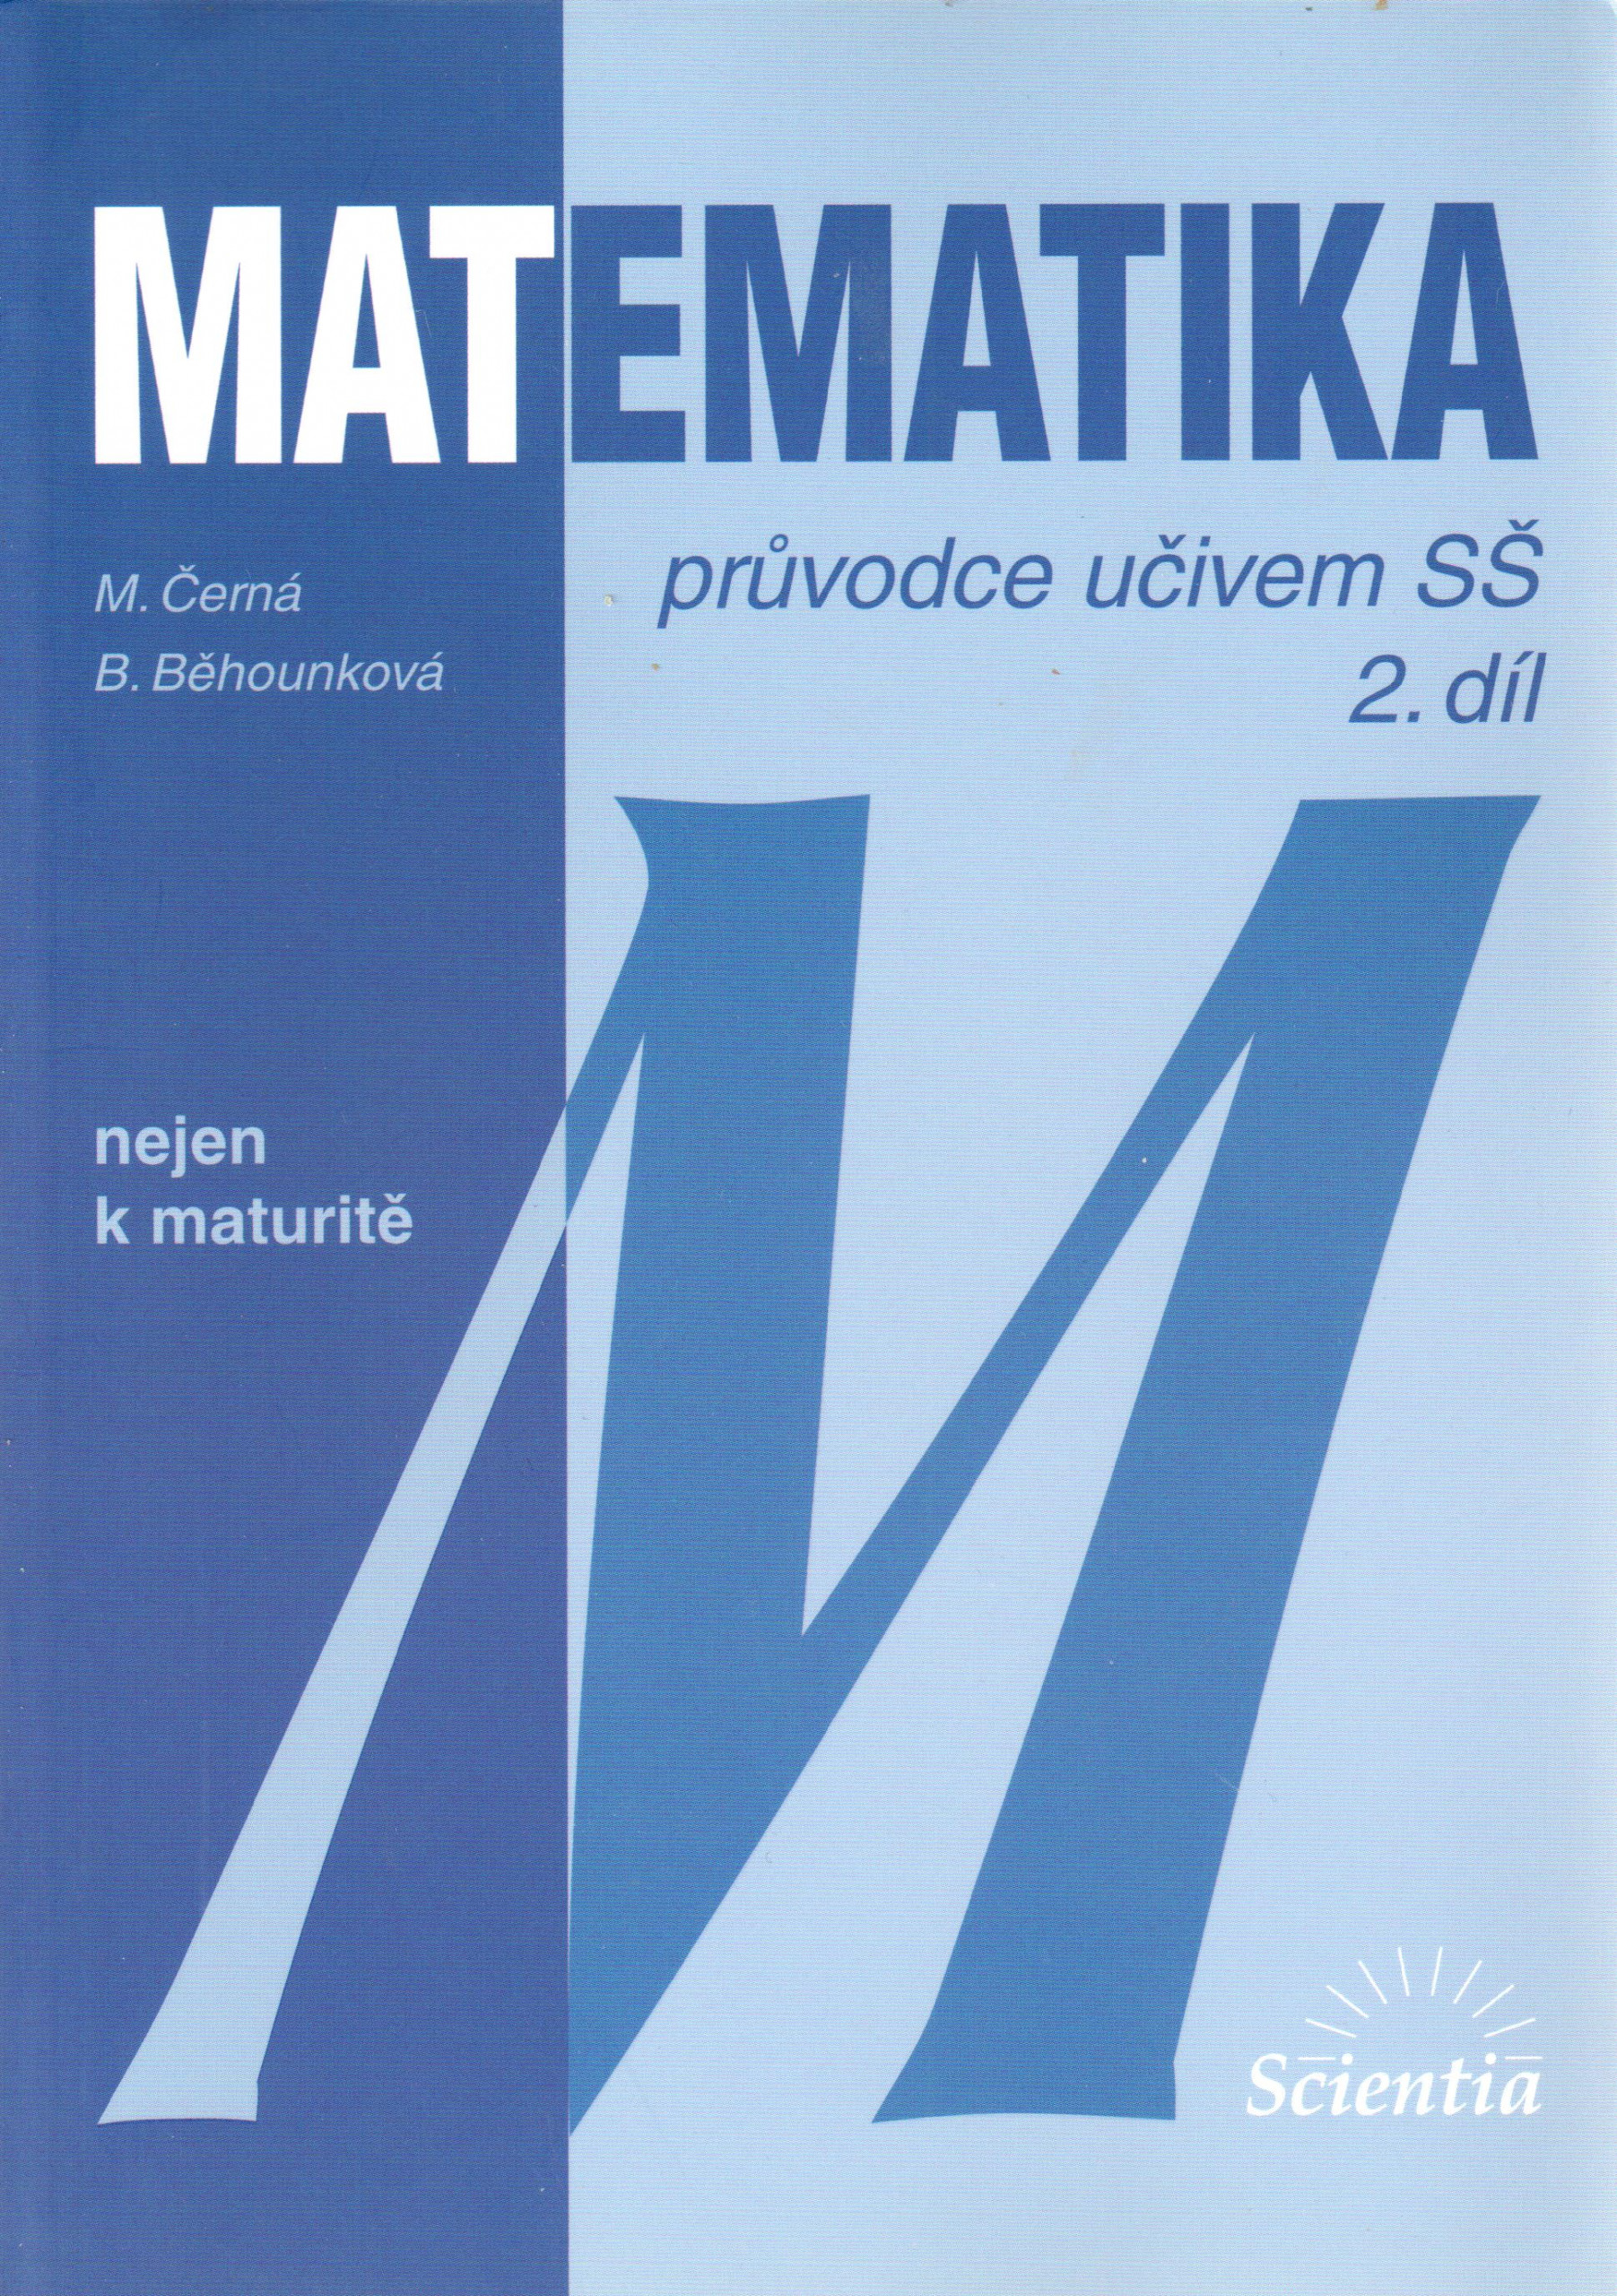 Matematika průvodce učivem SŠ (2. díl) - Náhled učebnice